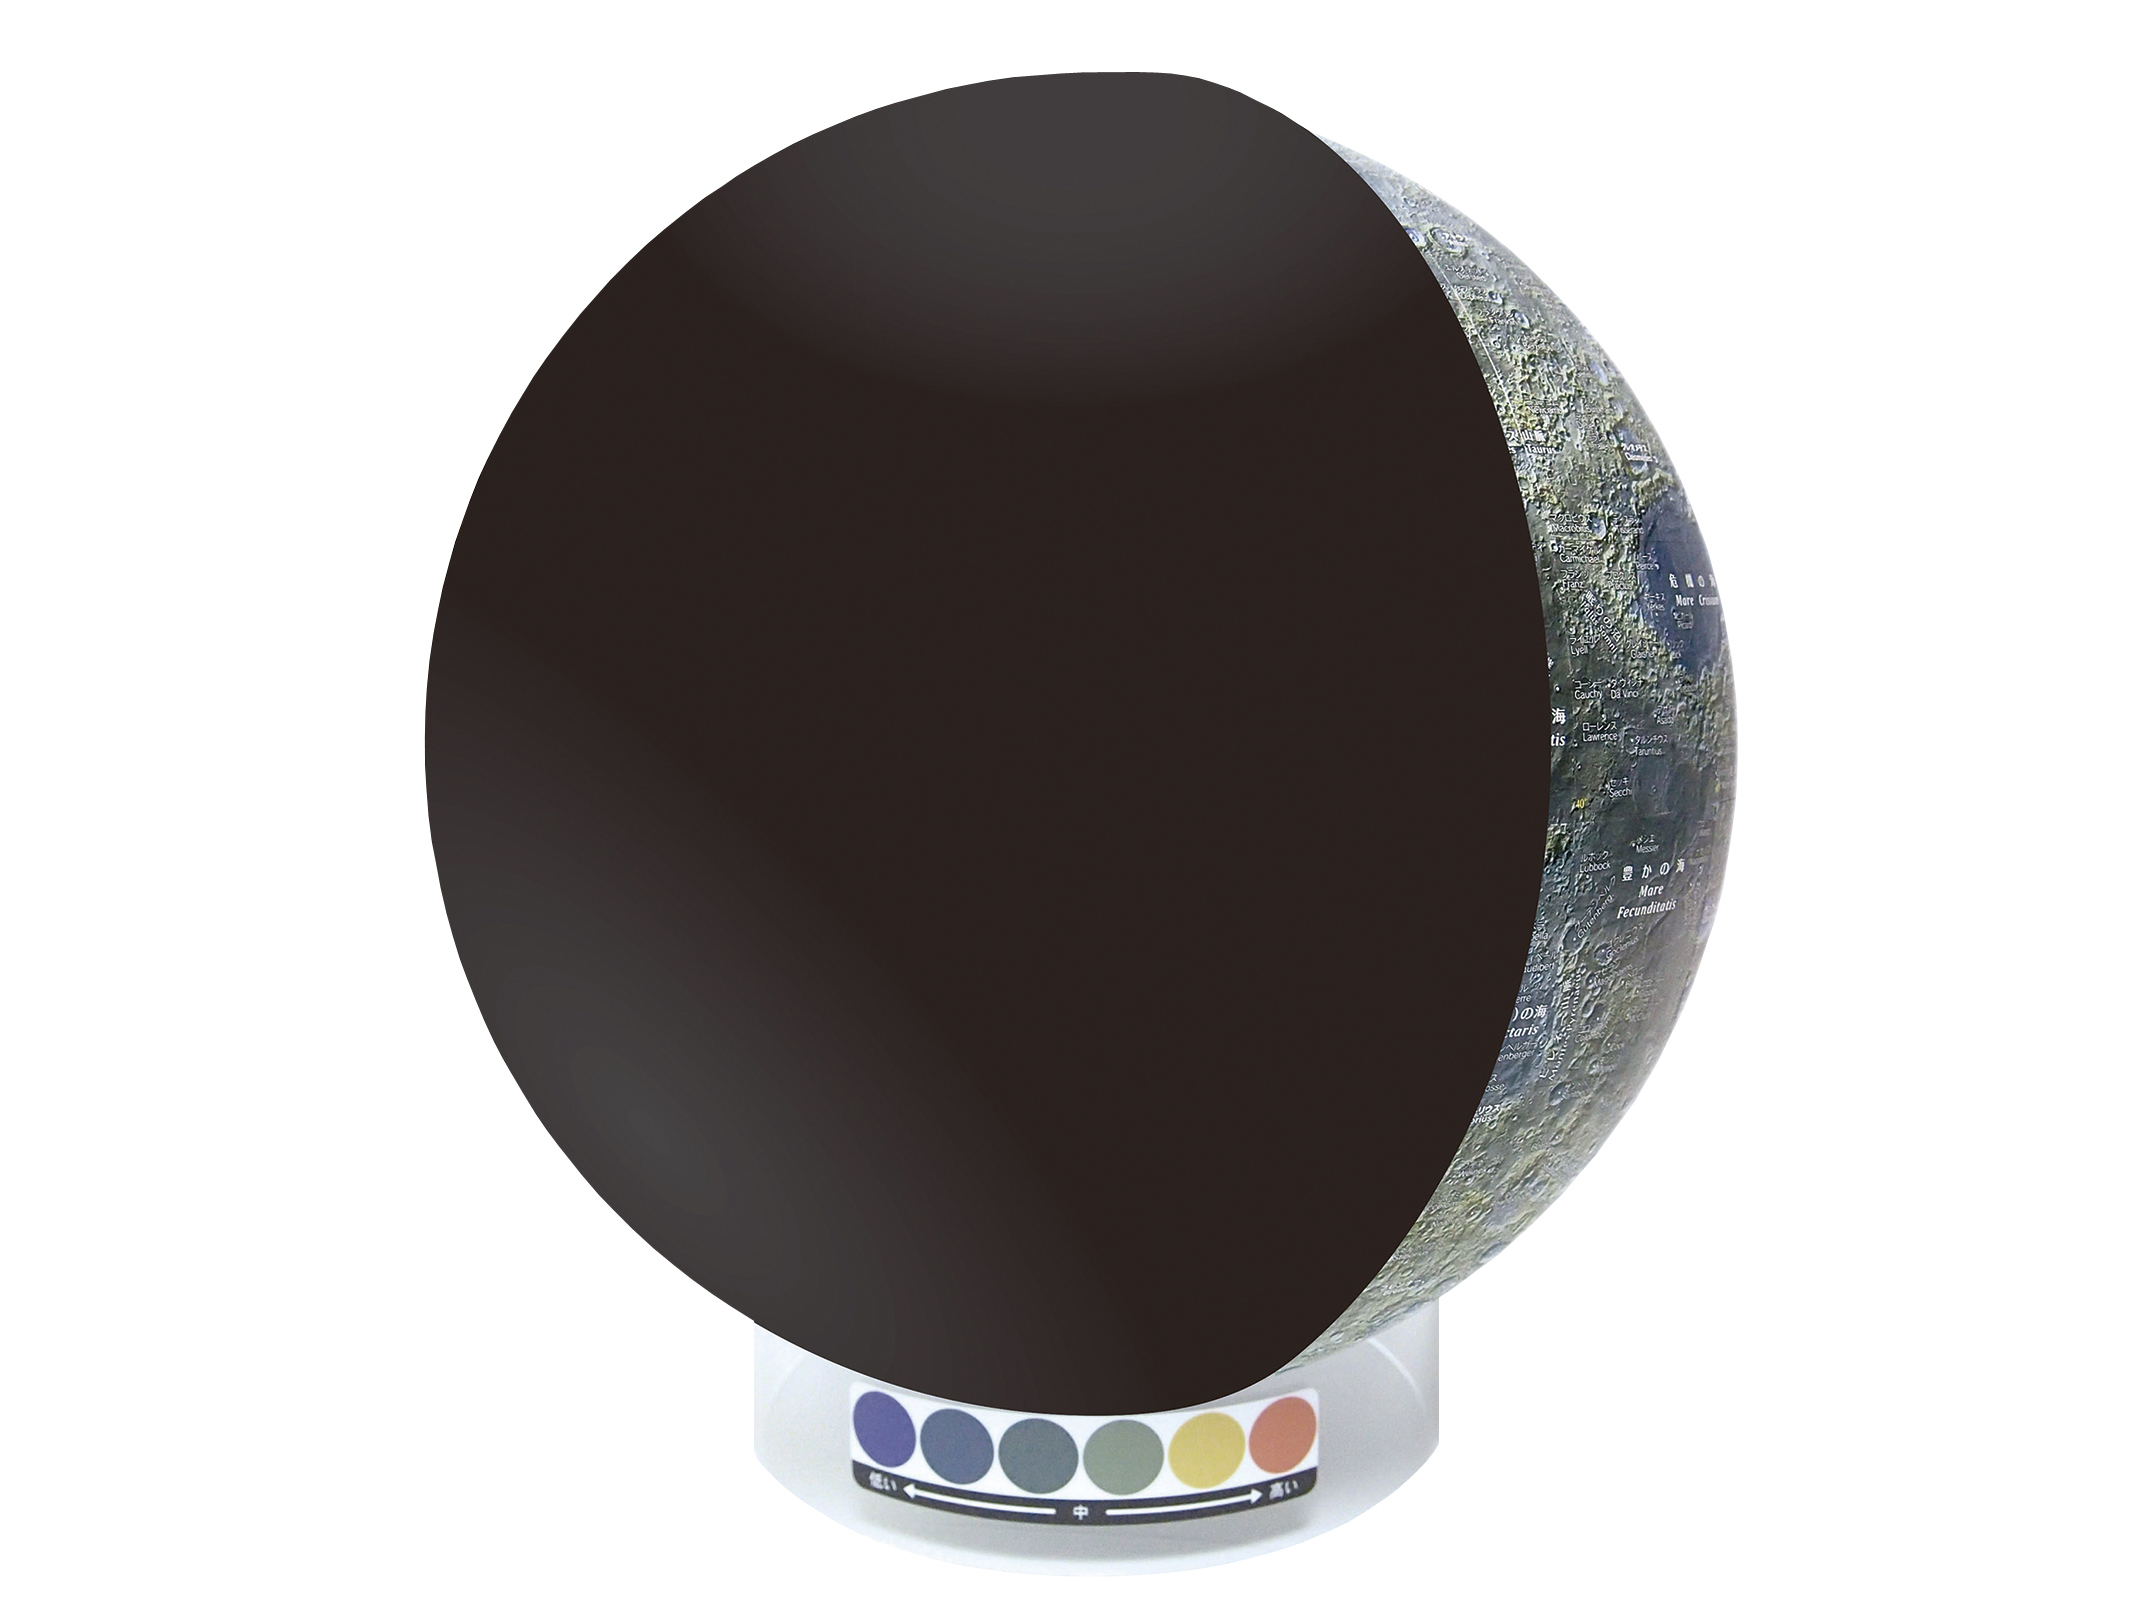 月球儀 KAGUYA-1(黒色半球付)